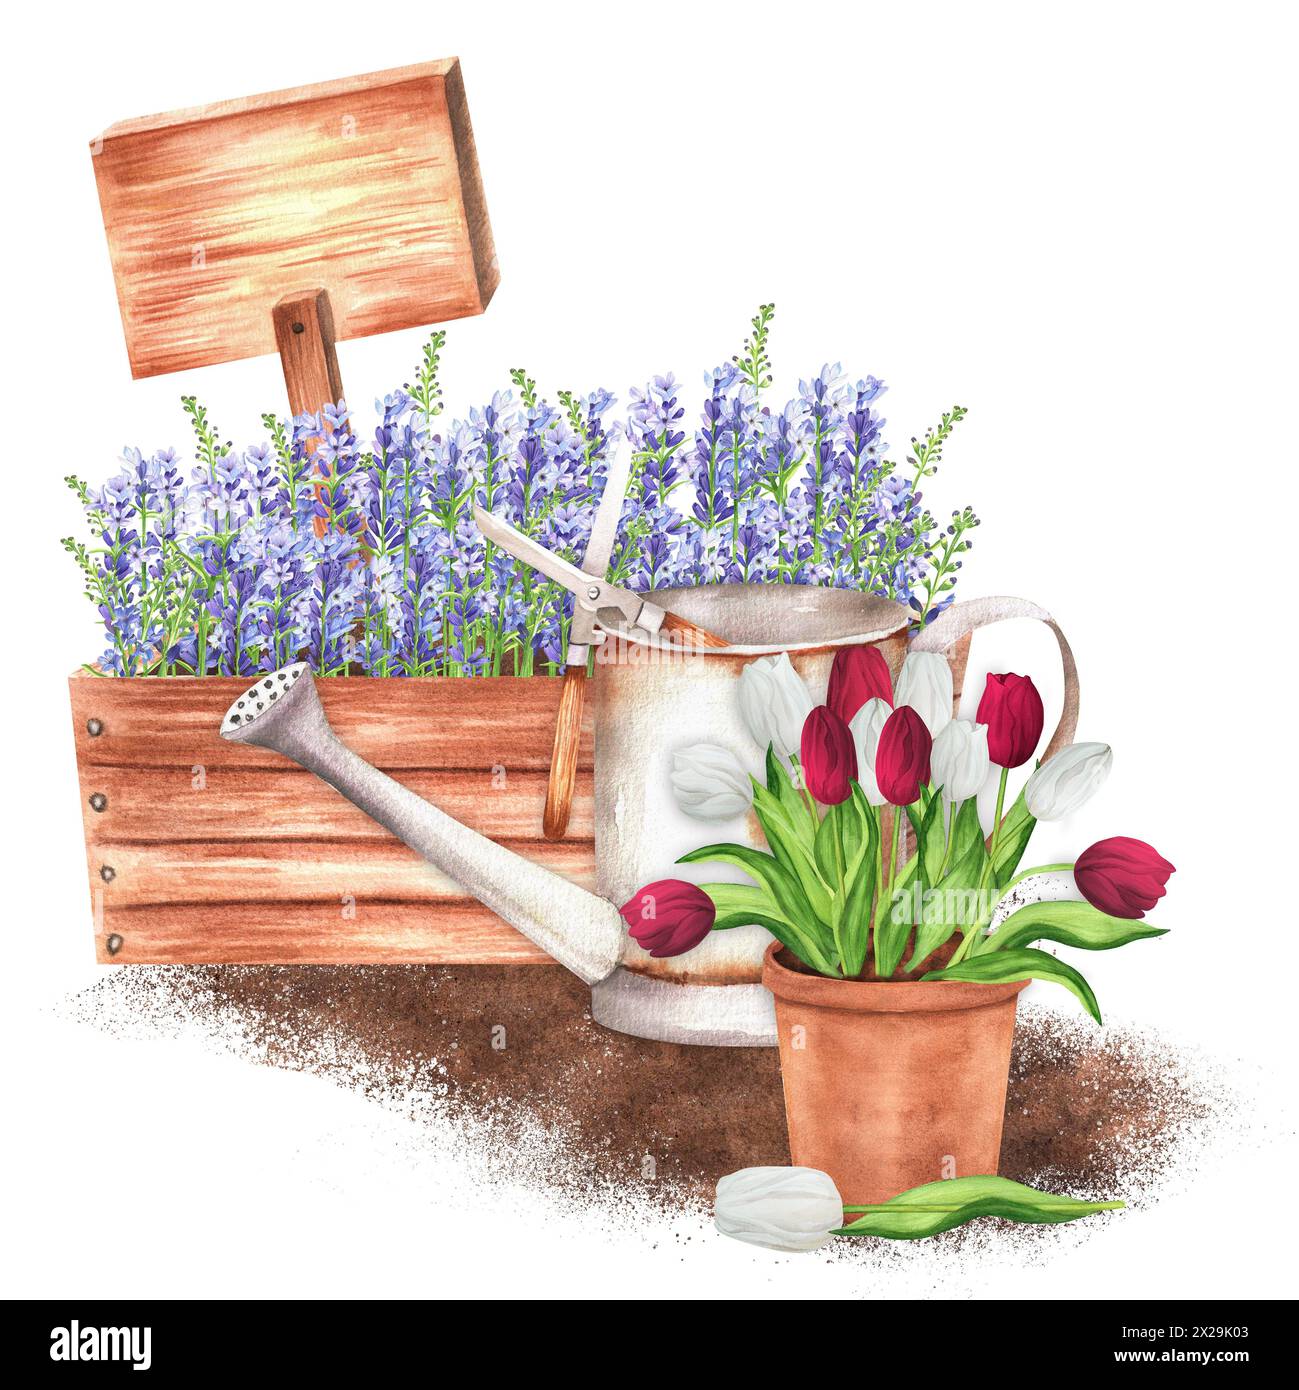 Illustration d'aquarelle dessinée à la main. Scène rustique avec caisse en bois à la lavande, un pot de fleurs en terre cuite avec tulipes blanches et rouges, arrosoir et W. Banque D'Images